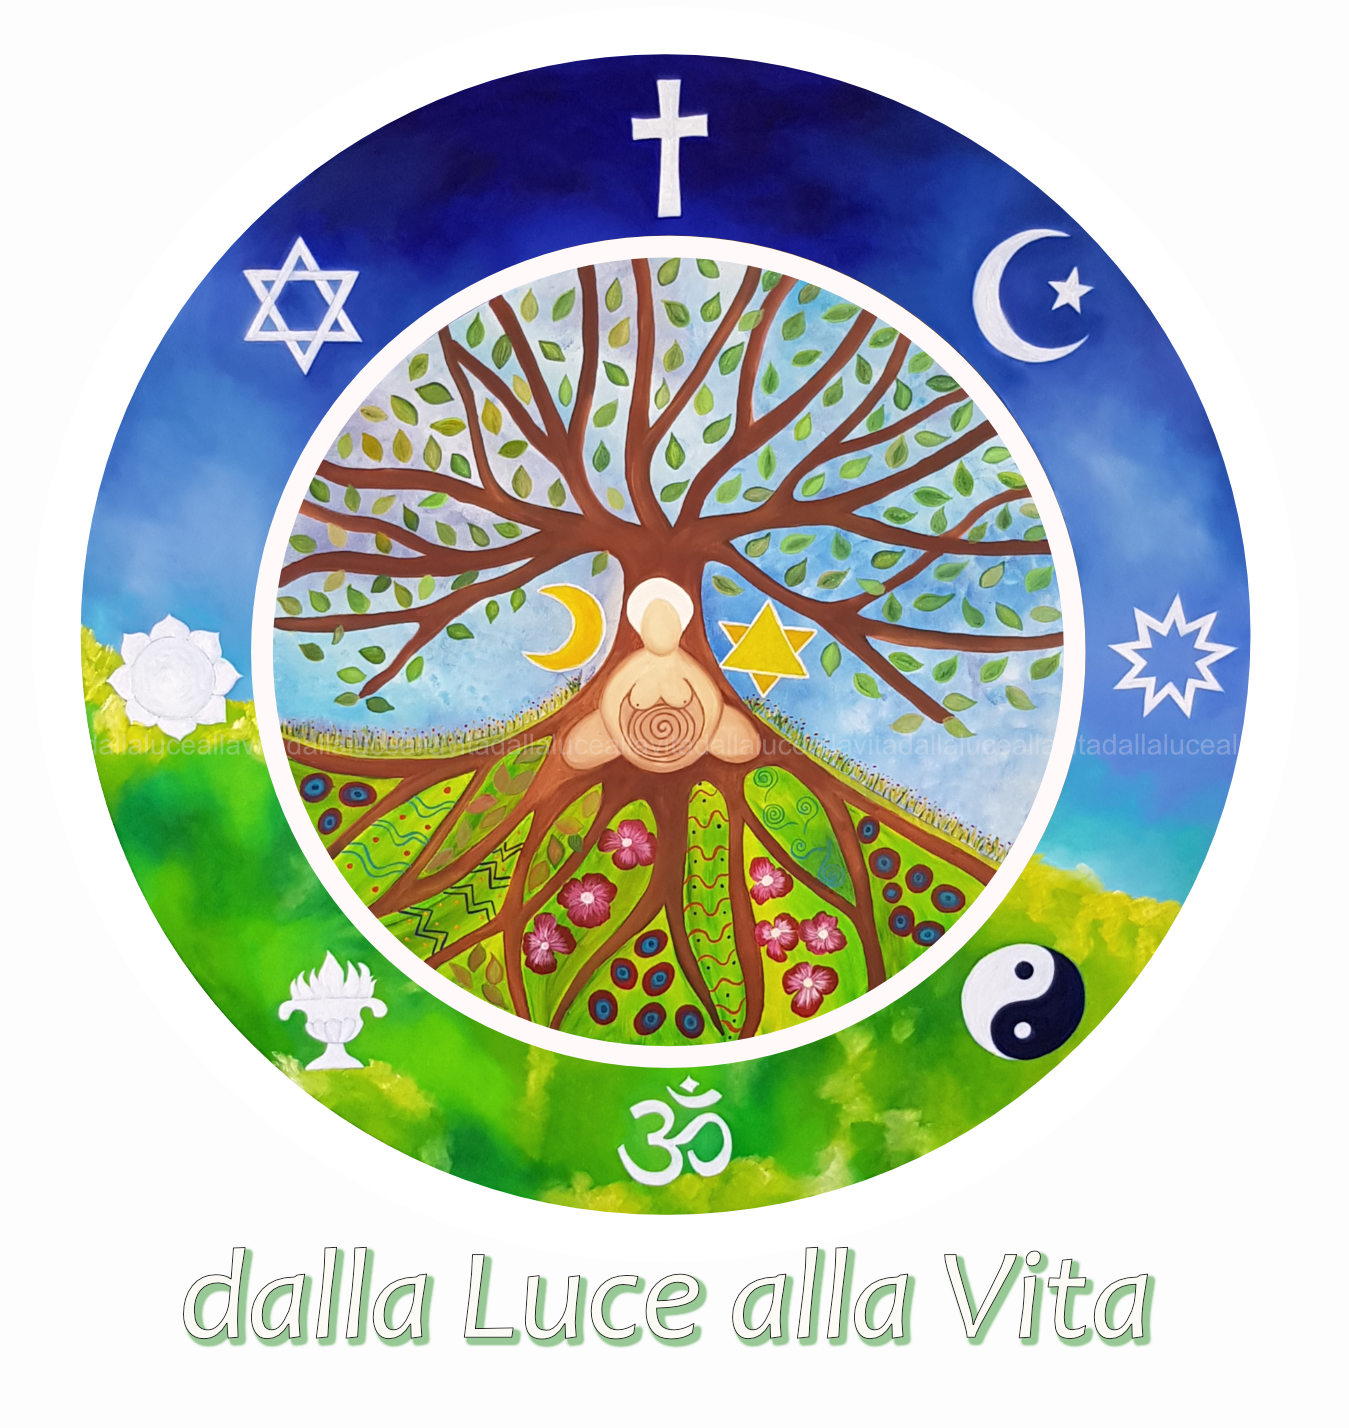 Un progetto per la coscienza universale e la pace ecumenica